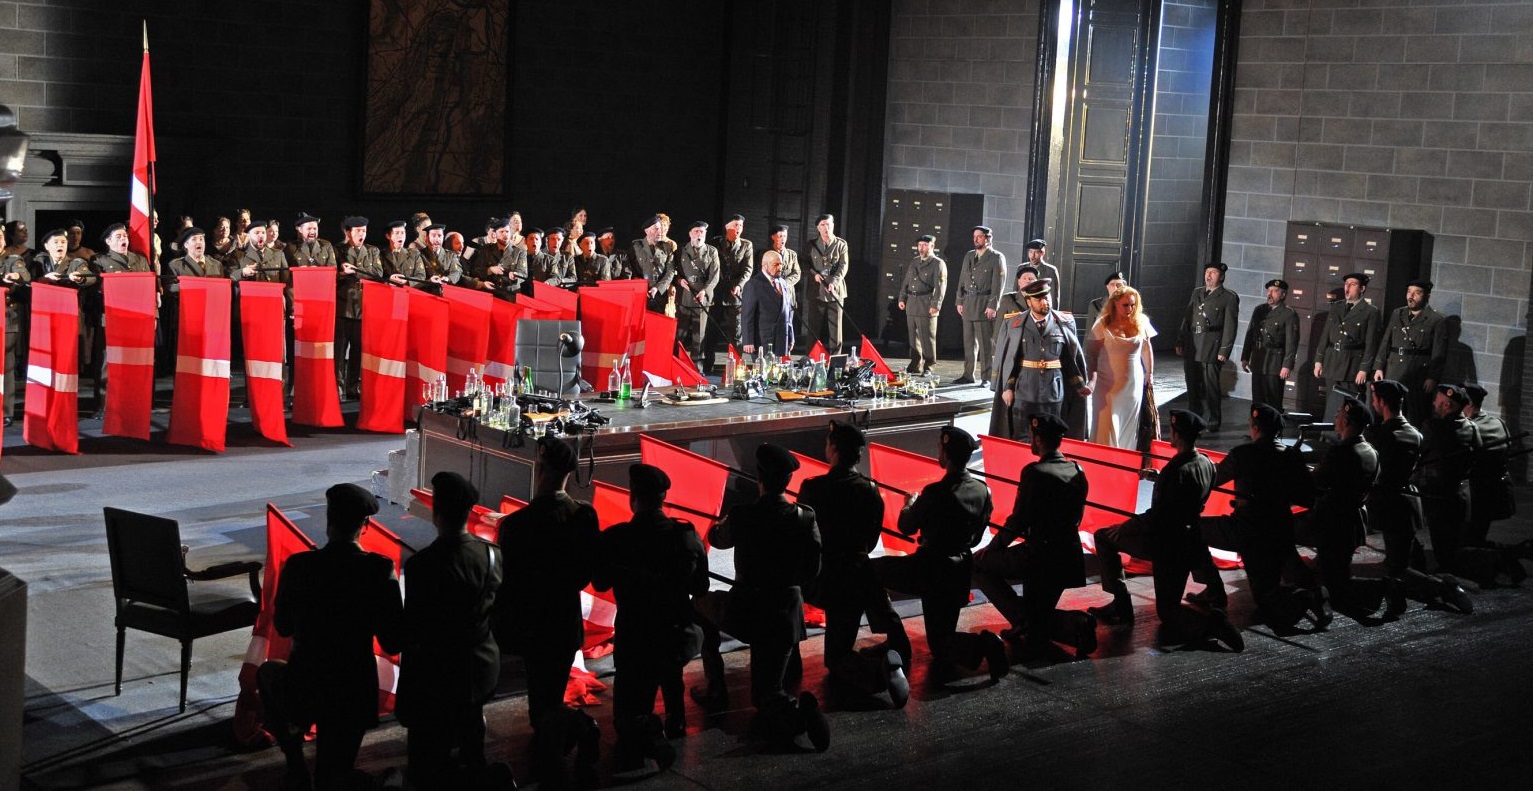 'El ocaso de los dioses'. Imagen de la producción en el Gran Teatre del Liceu de Barcelona. © A. Bofill.